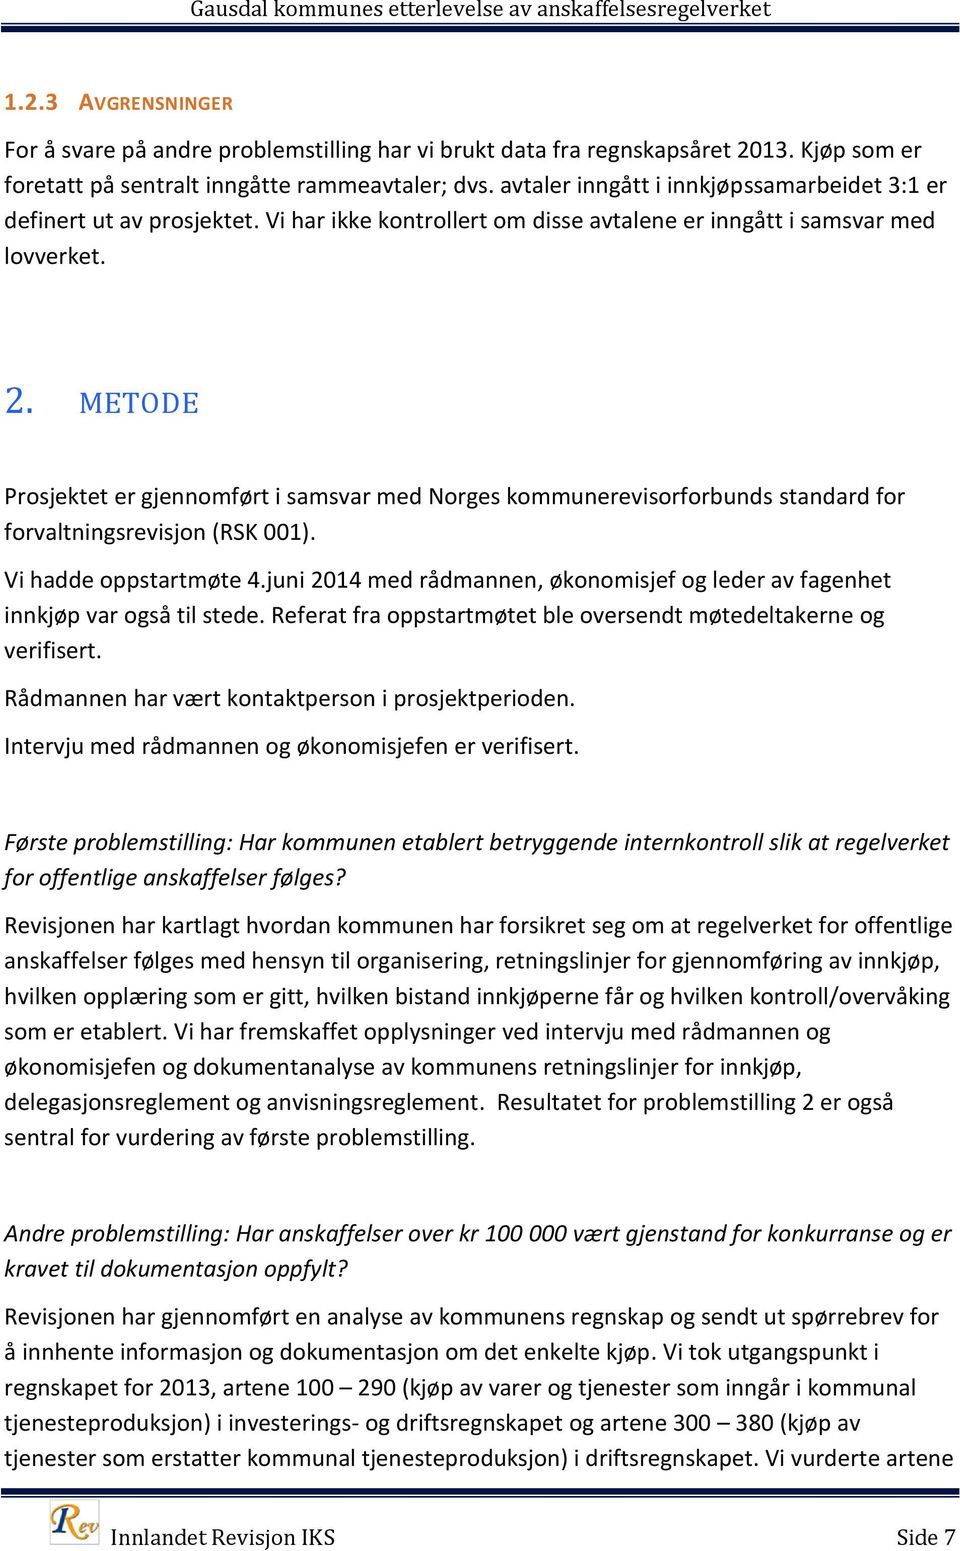 METODE Prosjektet er gjennomført i samsvar med Norges kommunerevisorforbunds standard for forvaltningsrevisjon (RSK 001). Vi hadde oppstartmøte 4.